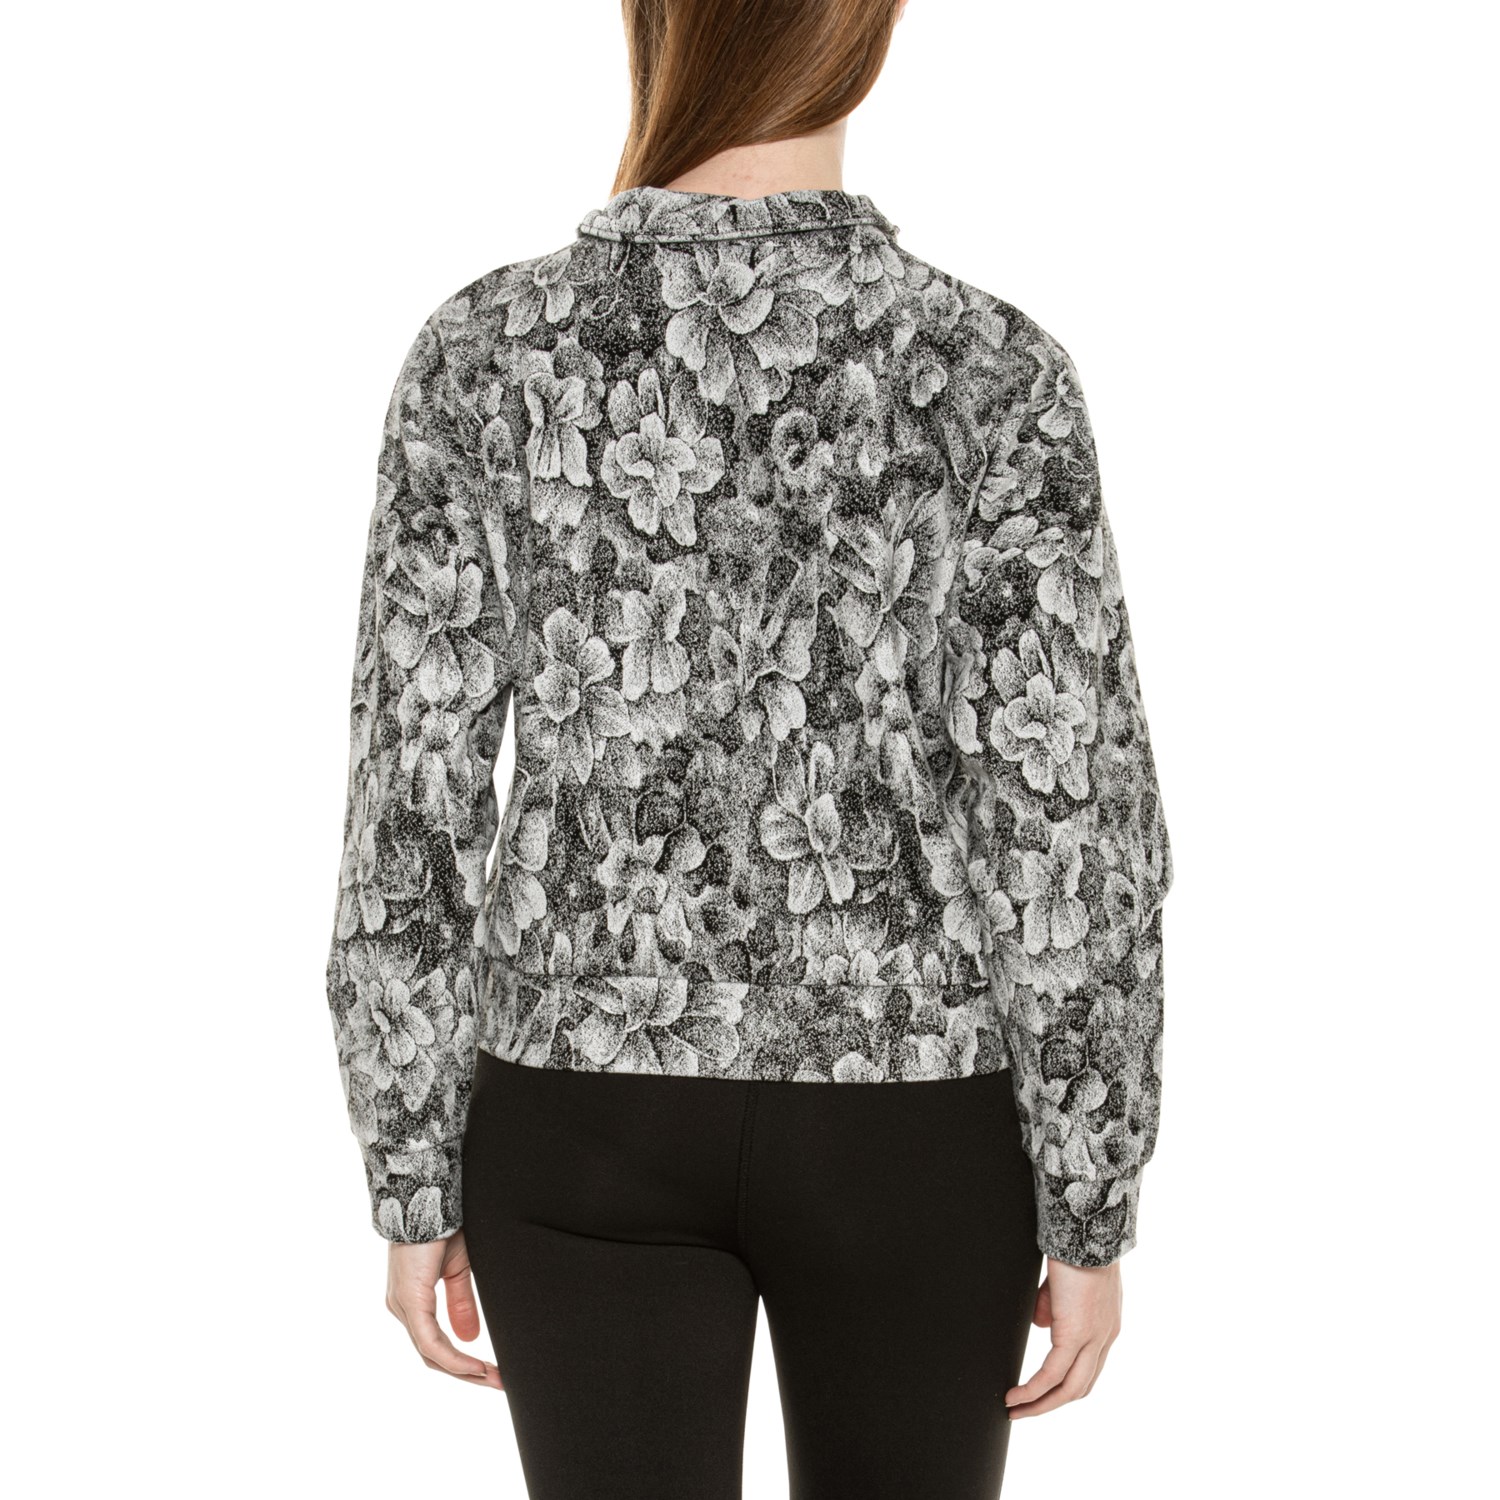 Kyodan Outdoor Women's Medium 1/4 Zip Pullover Fleece shirt